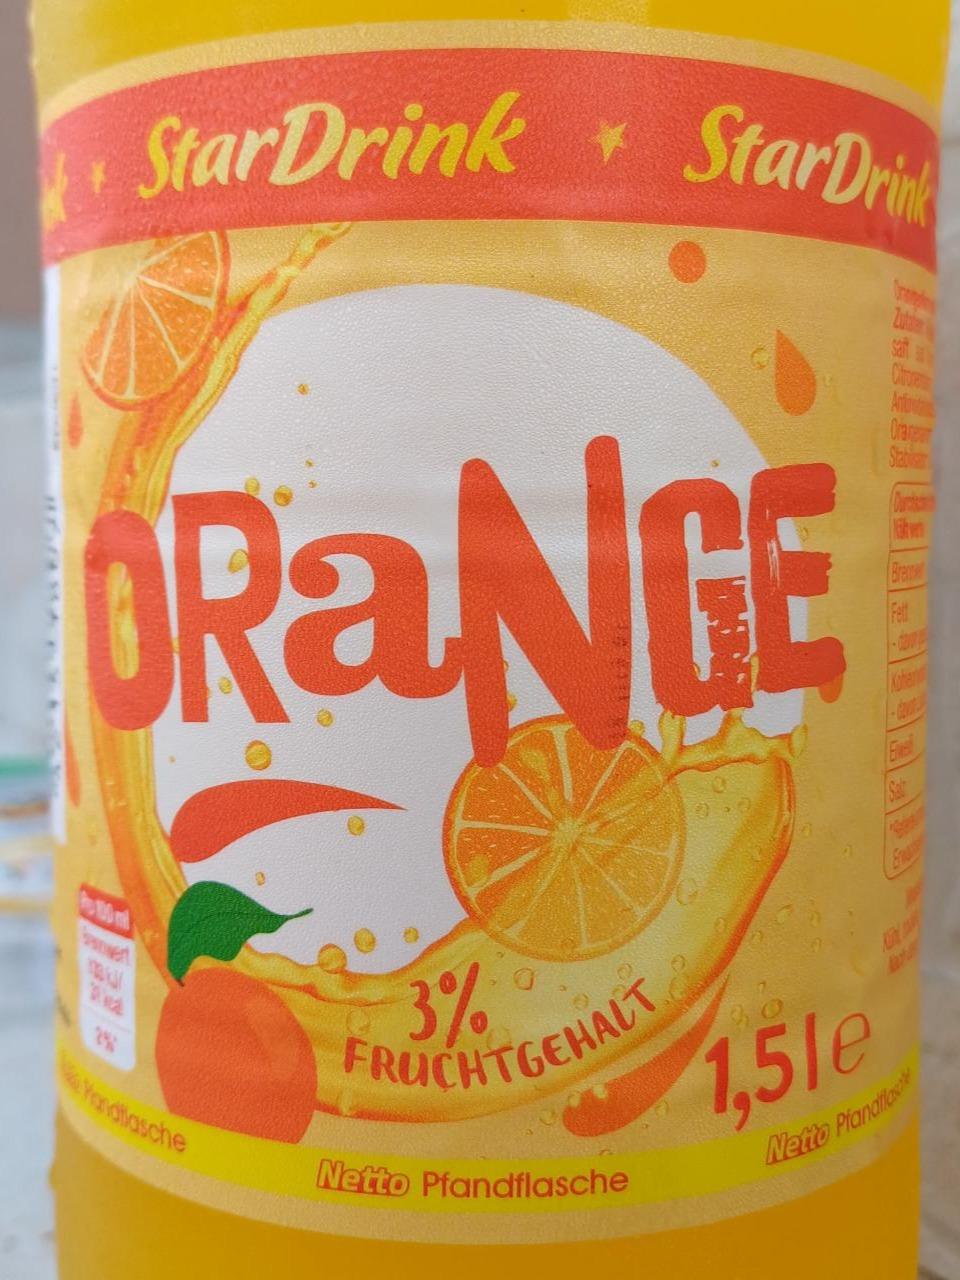 Fotografie - Orange 3% fruchtgehalt StarDrink